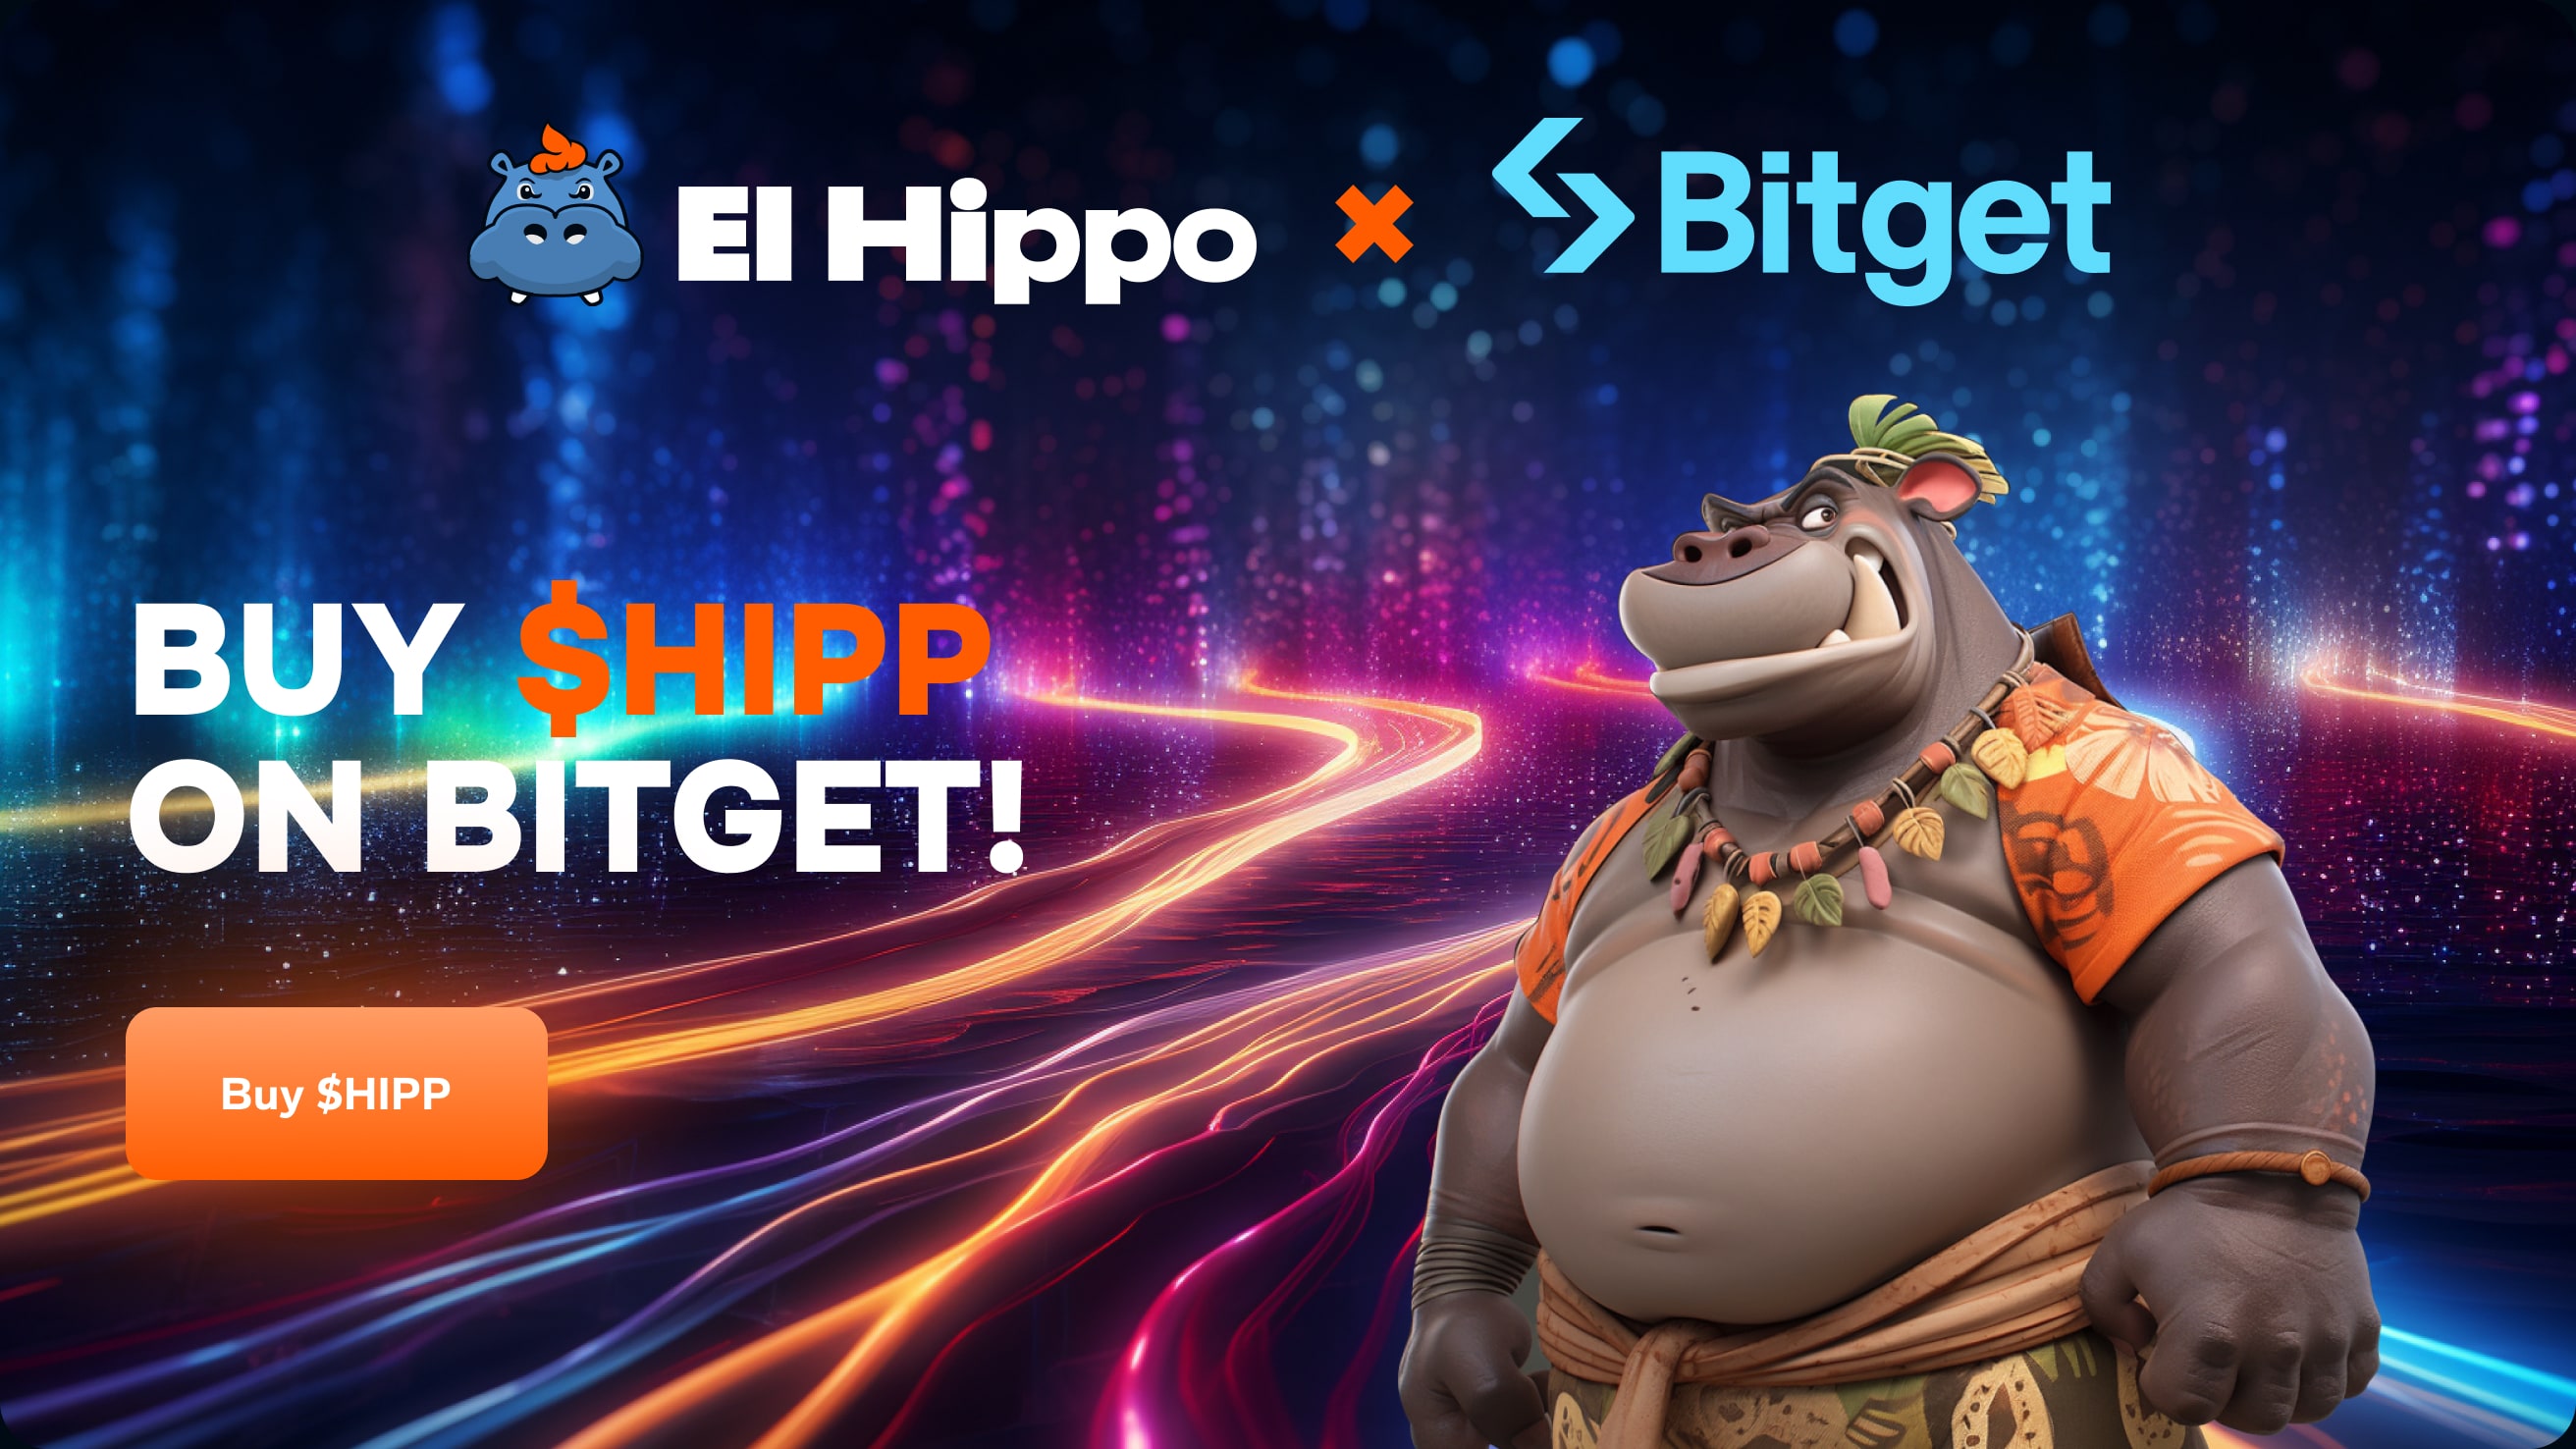 El Hippo x Bitget